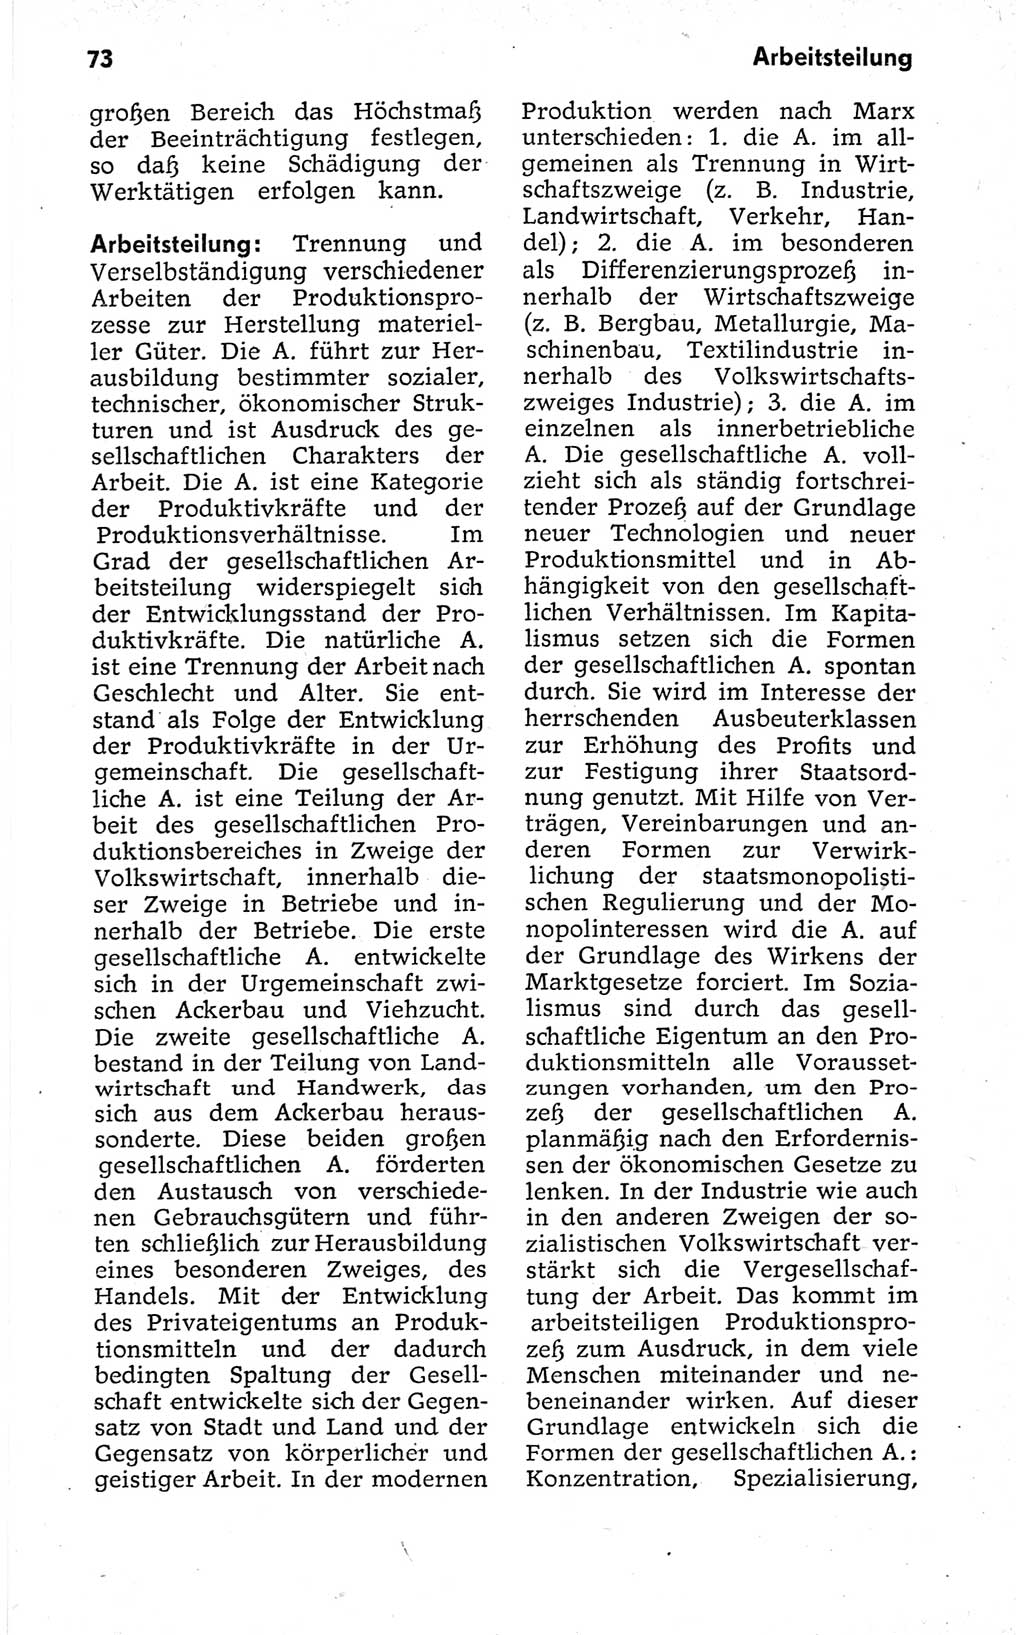 Kleines politisches Wörterbuch [Deutsche Demokratische Republik (DDR)] 1973, Seite 73 (Kl. pol. Wb. DDR 1973, S. 73)